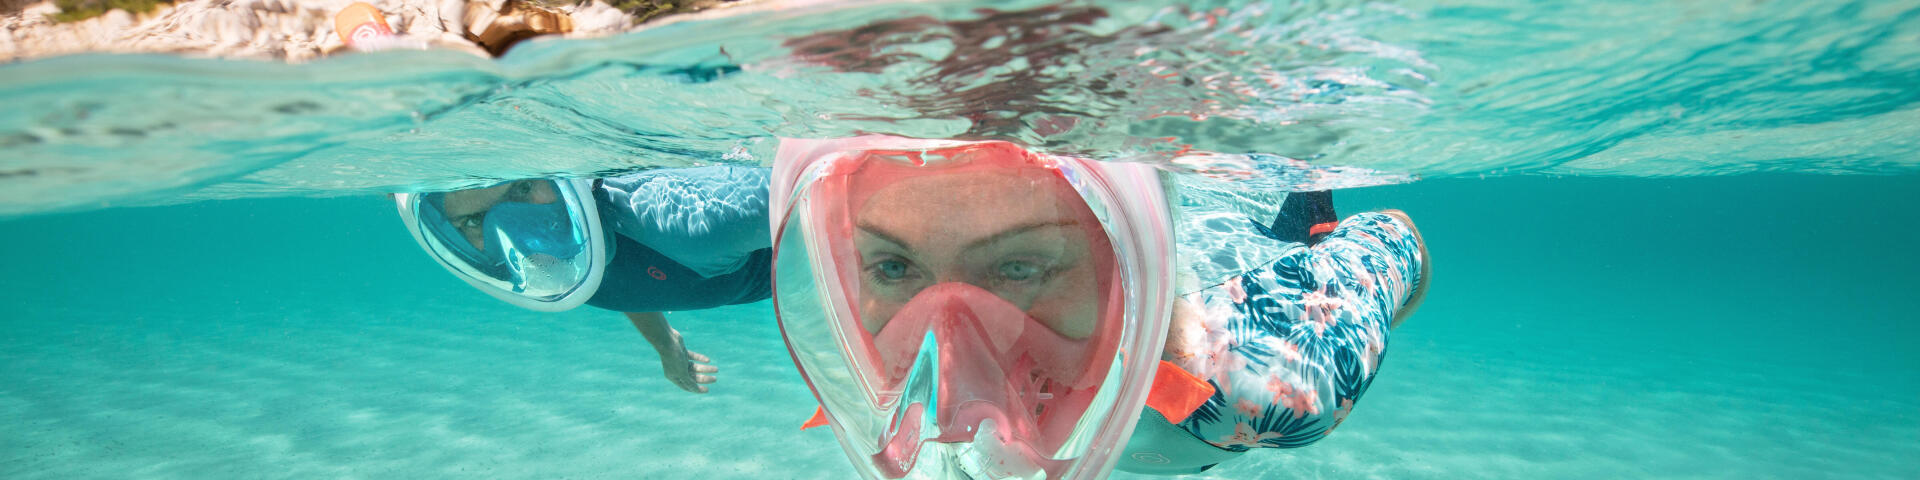 Säkerhet vid snorkling, simning med fenor